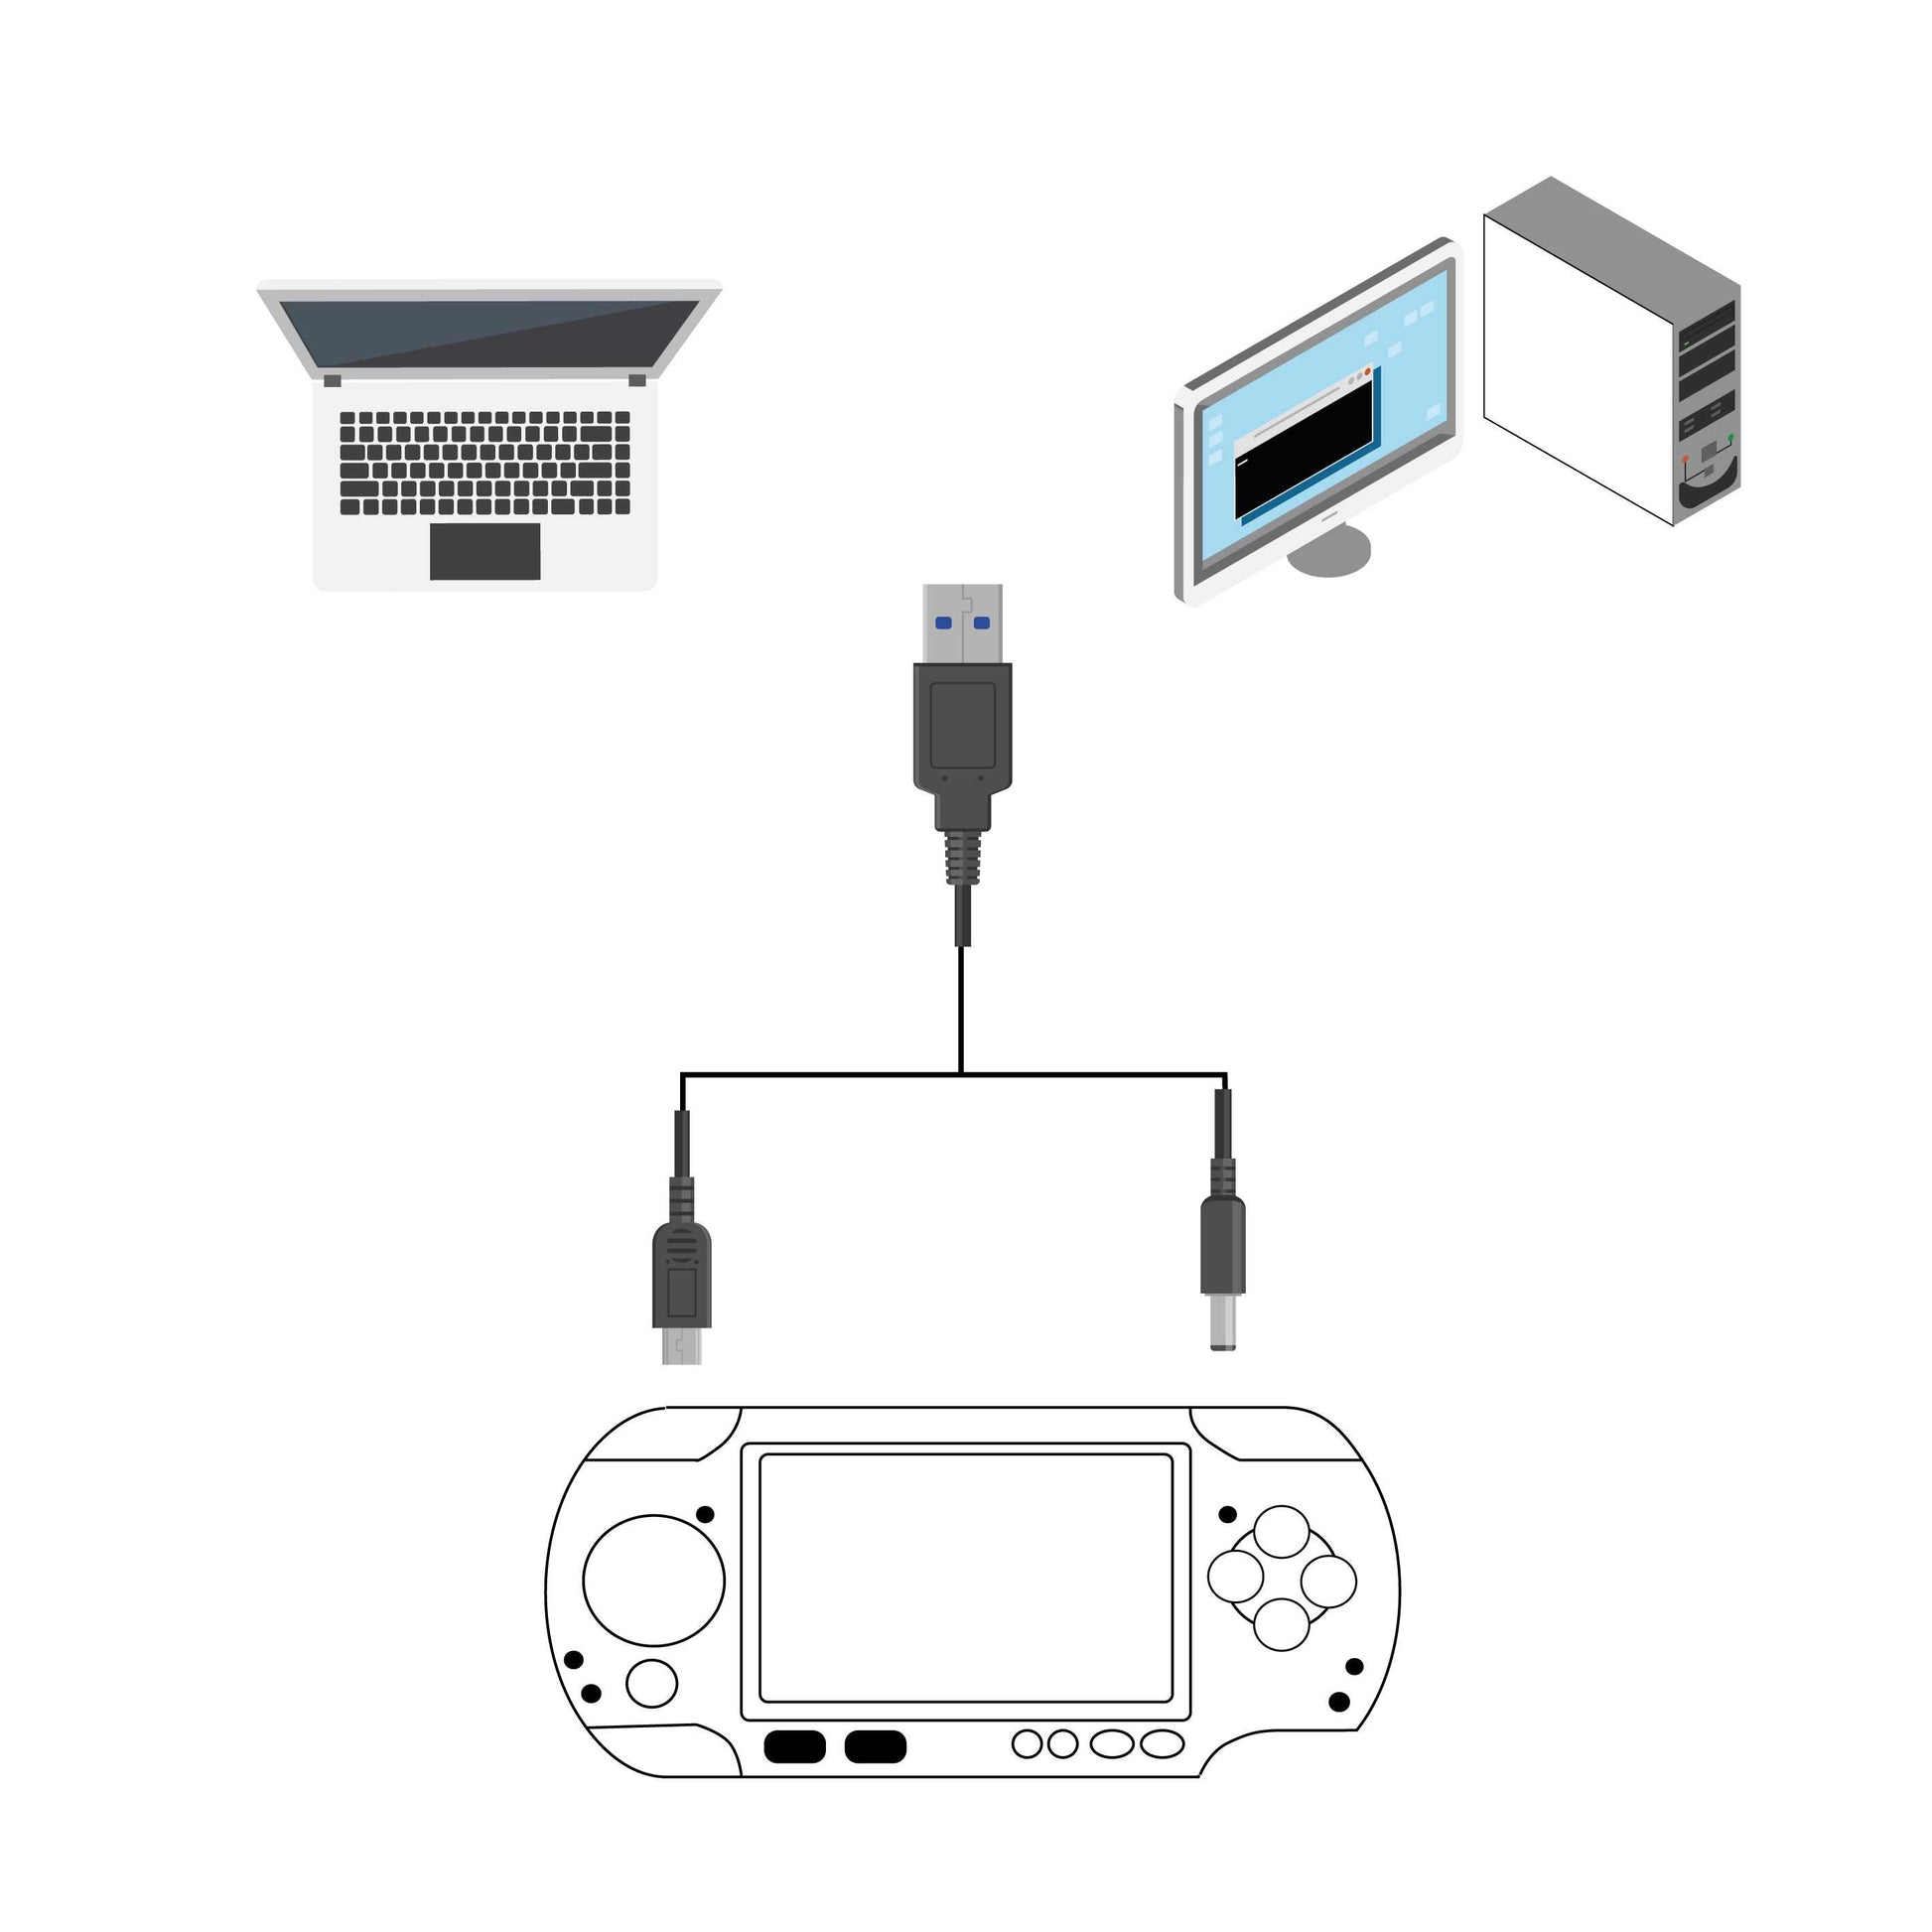 Cable Carga y Datos compatible con consola Sony PSP 1000 2000 3000 Negro